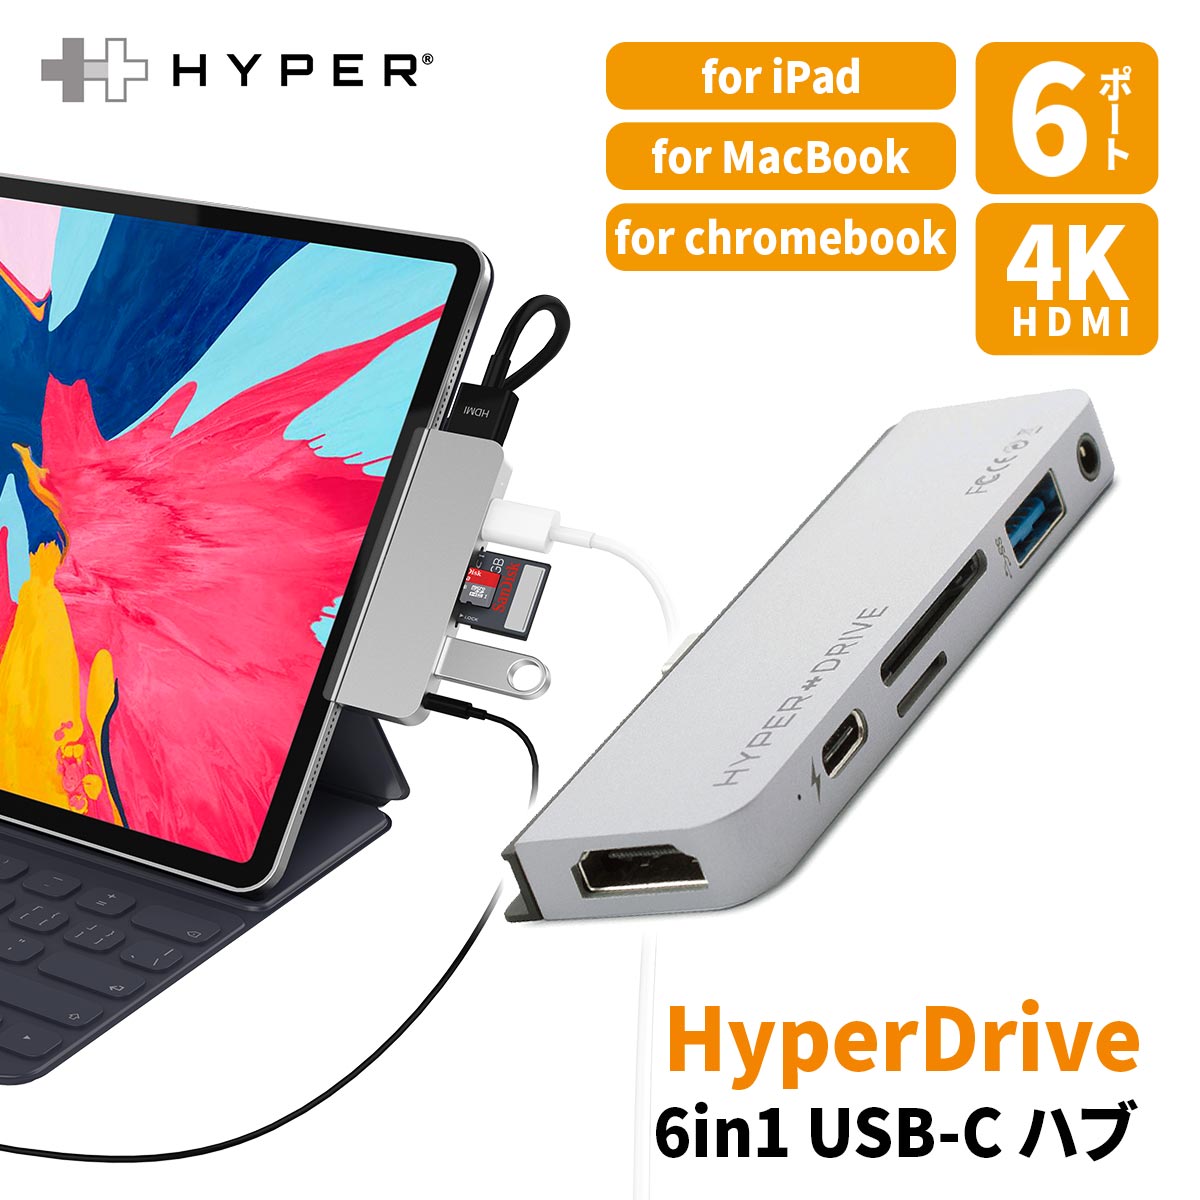 【正規品】 HyperDrive iPad Pro USB ハブ 6in1 ポート USB-Cハブ 変換 アダプタ 4k HDMI 60hz SDカードリーダー 3.5mm イヤホン HyperDrive HYPER++ | アイパッド hub USB3.1 microSD 60w 充電 ポータブル 持ち運び 在宅 テレワーク オフィス